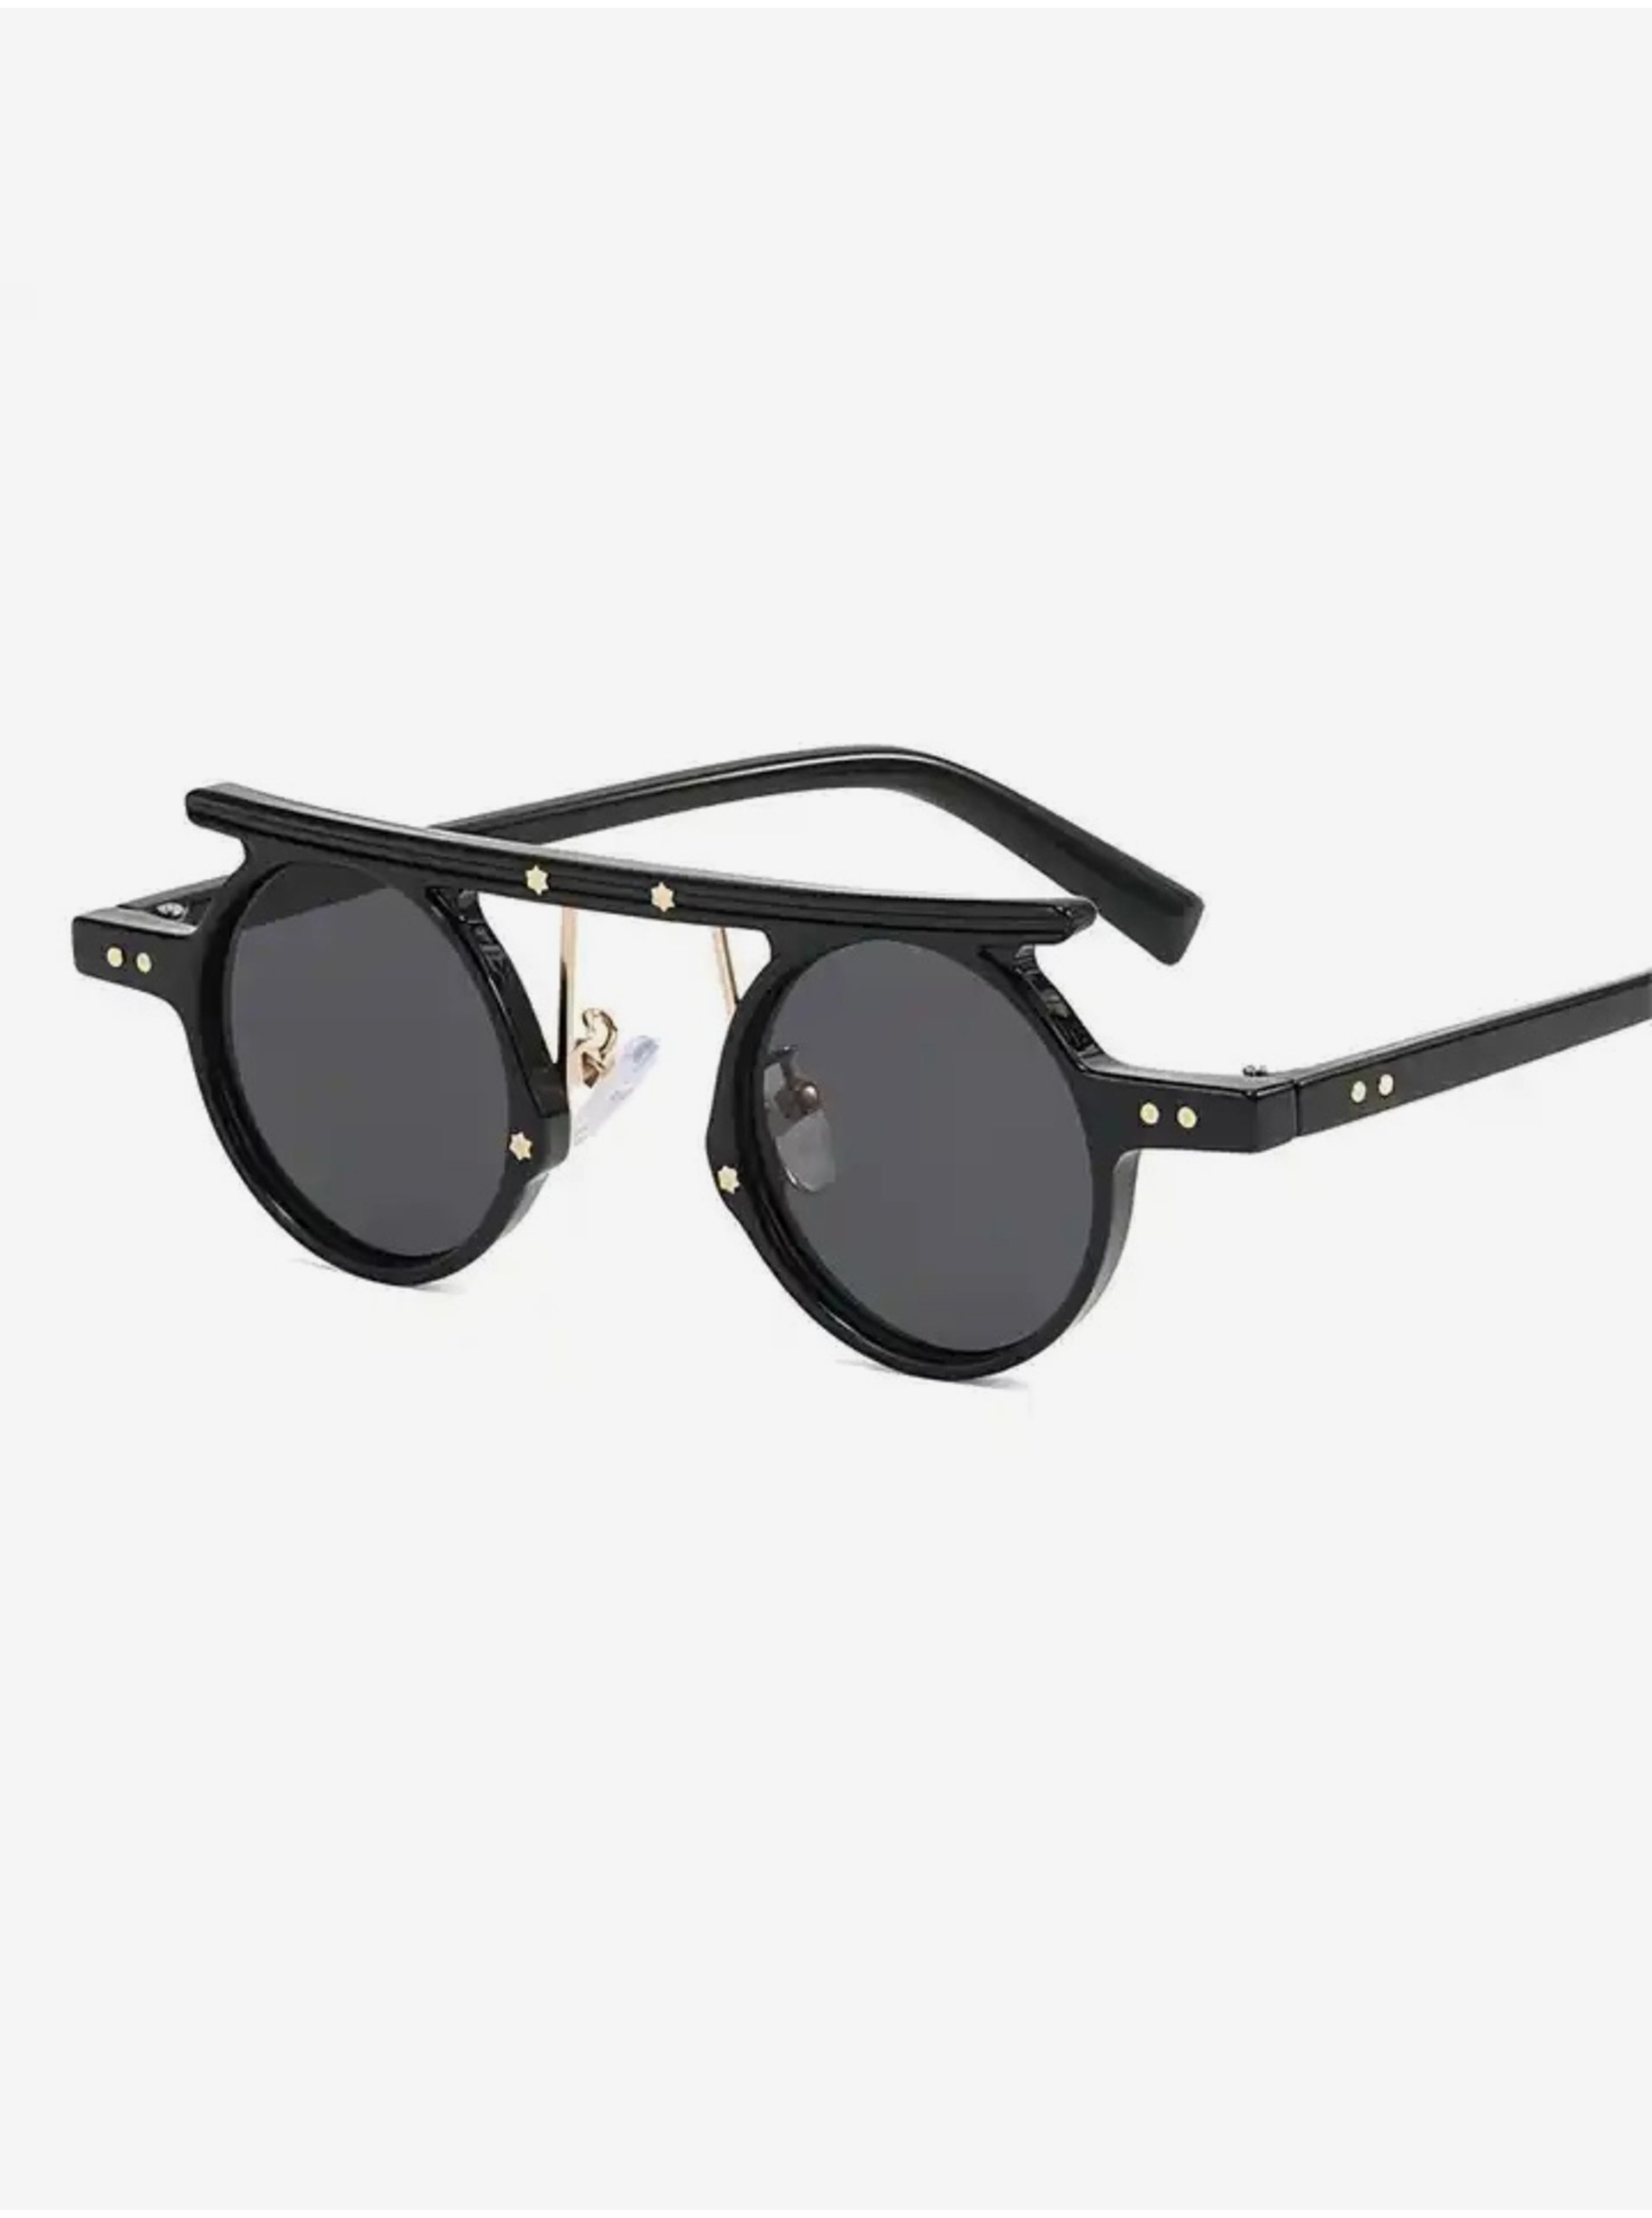 E-shop Čierne unisex slnečné okuliare VeyRey Steampunk Punnyostion